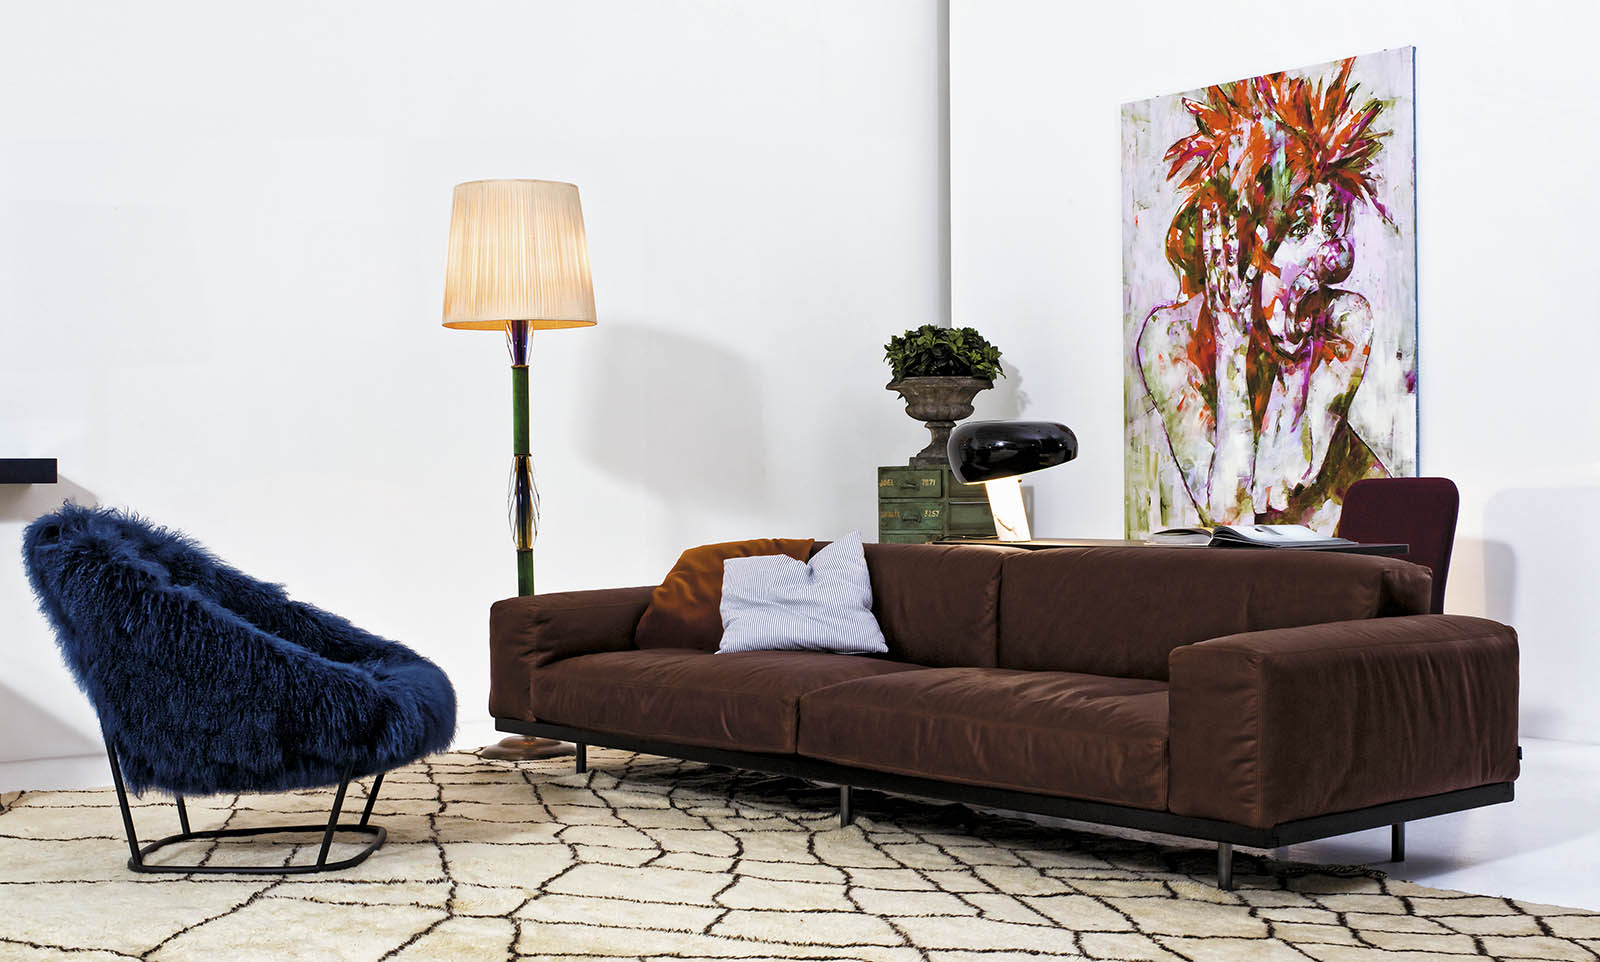 Arflex-Katrin-poltrona-design-Carlo-Colombo- pelo- encosto-alto-estar-hospitalidade-luxo-projeto-madeinitaly-moderno-contemporâneo